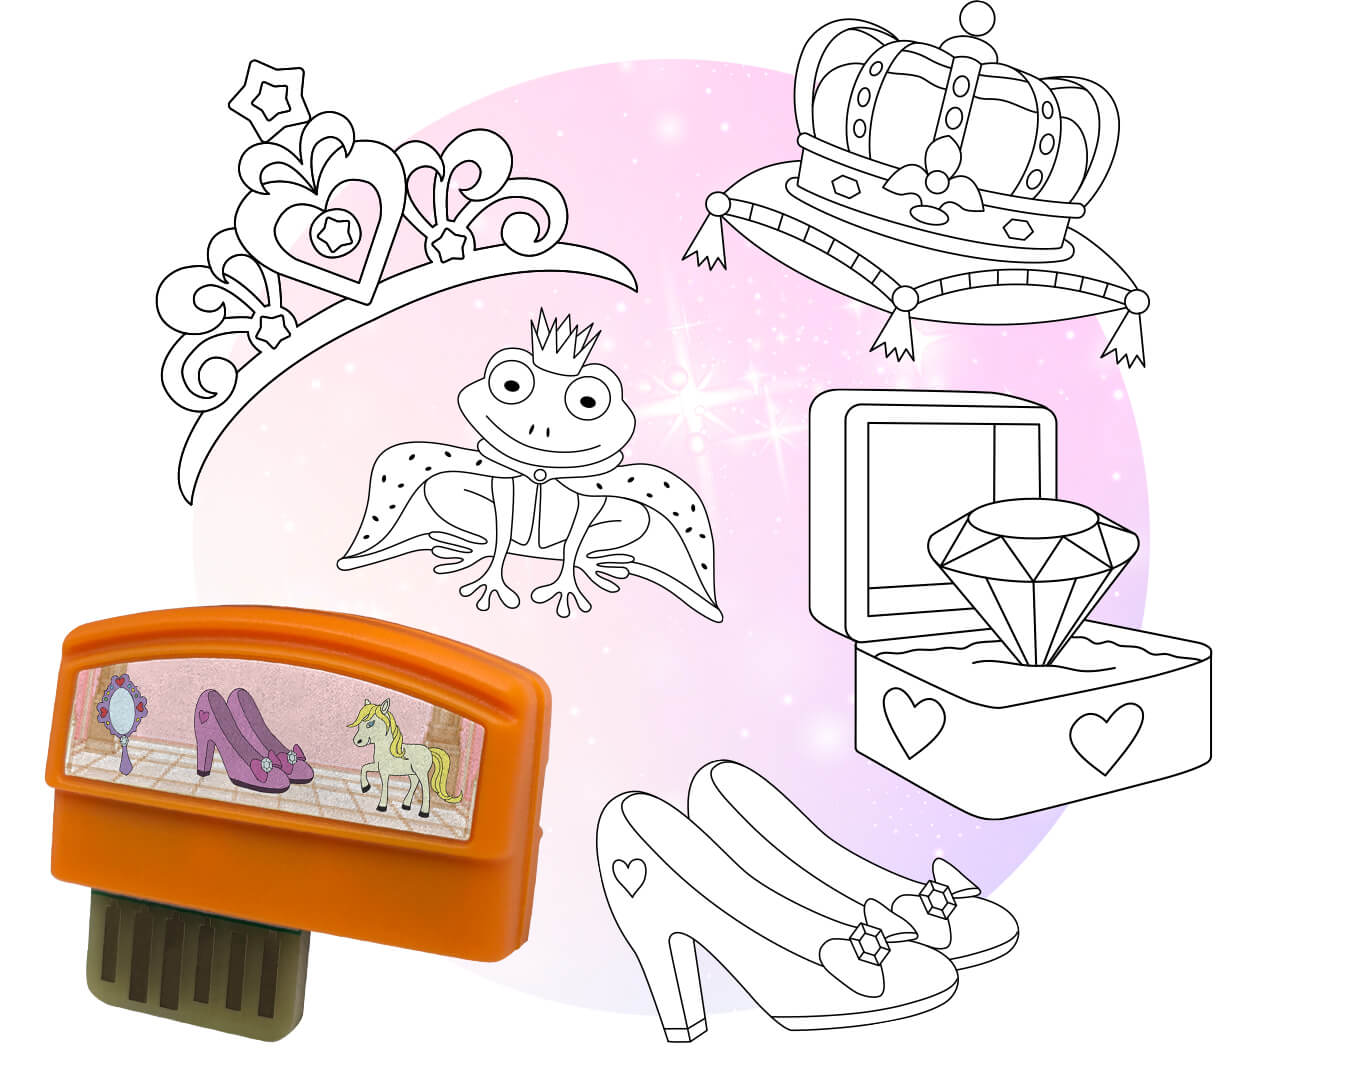 smART sketcher® 2.0 Creativity Packs - Royal Princesses – Flycatcher Toys